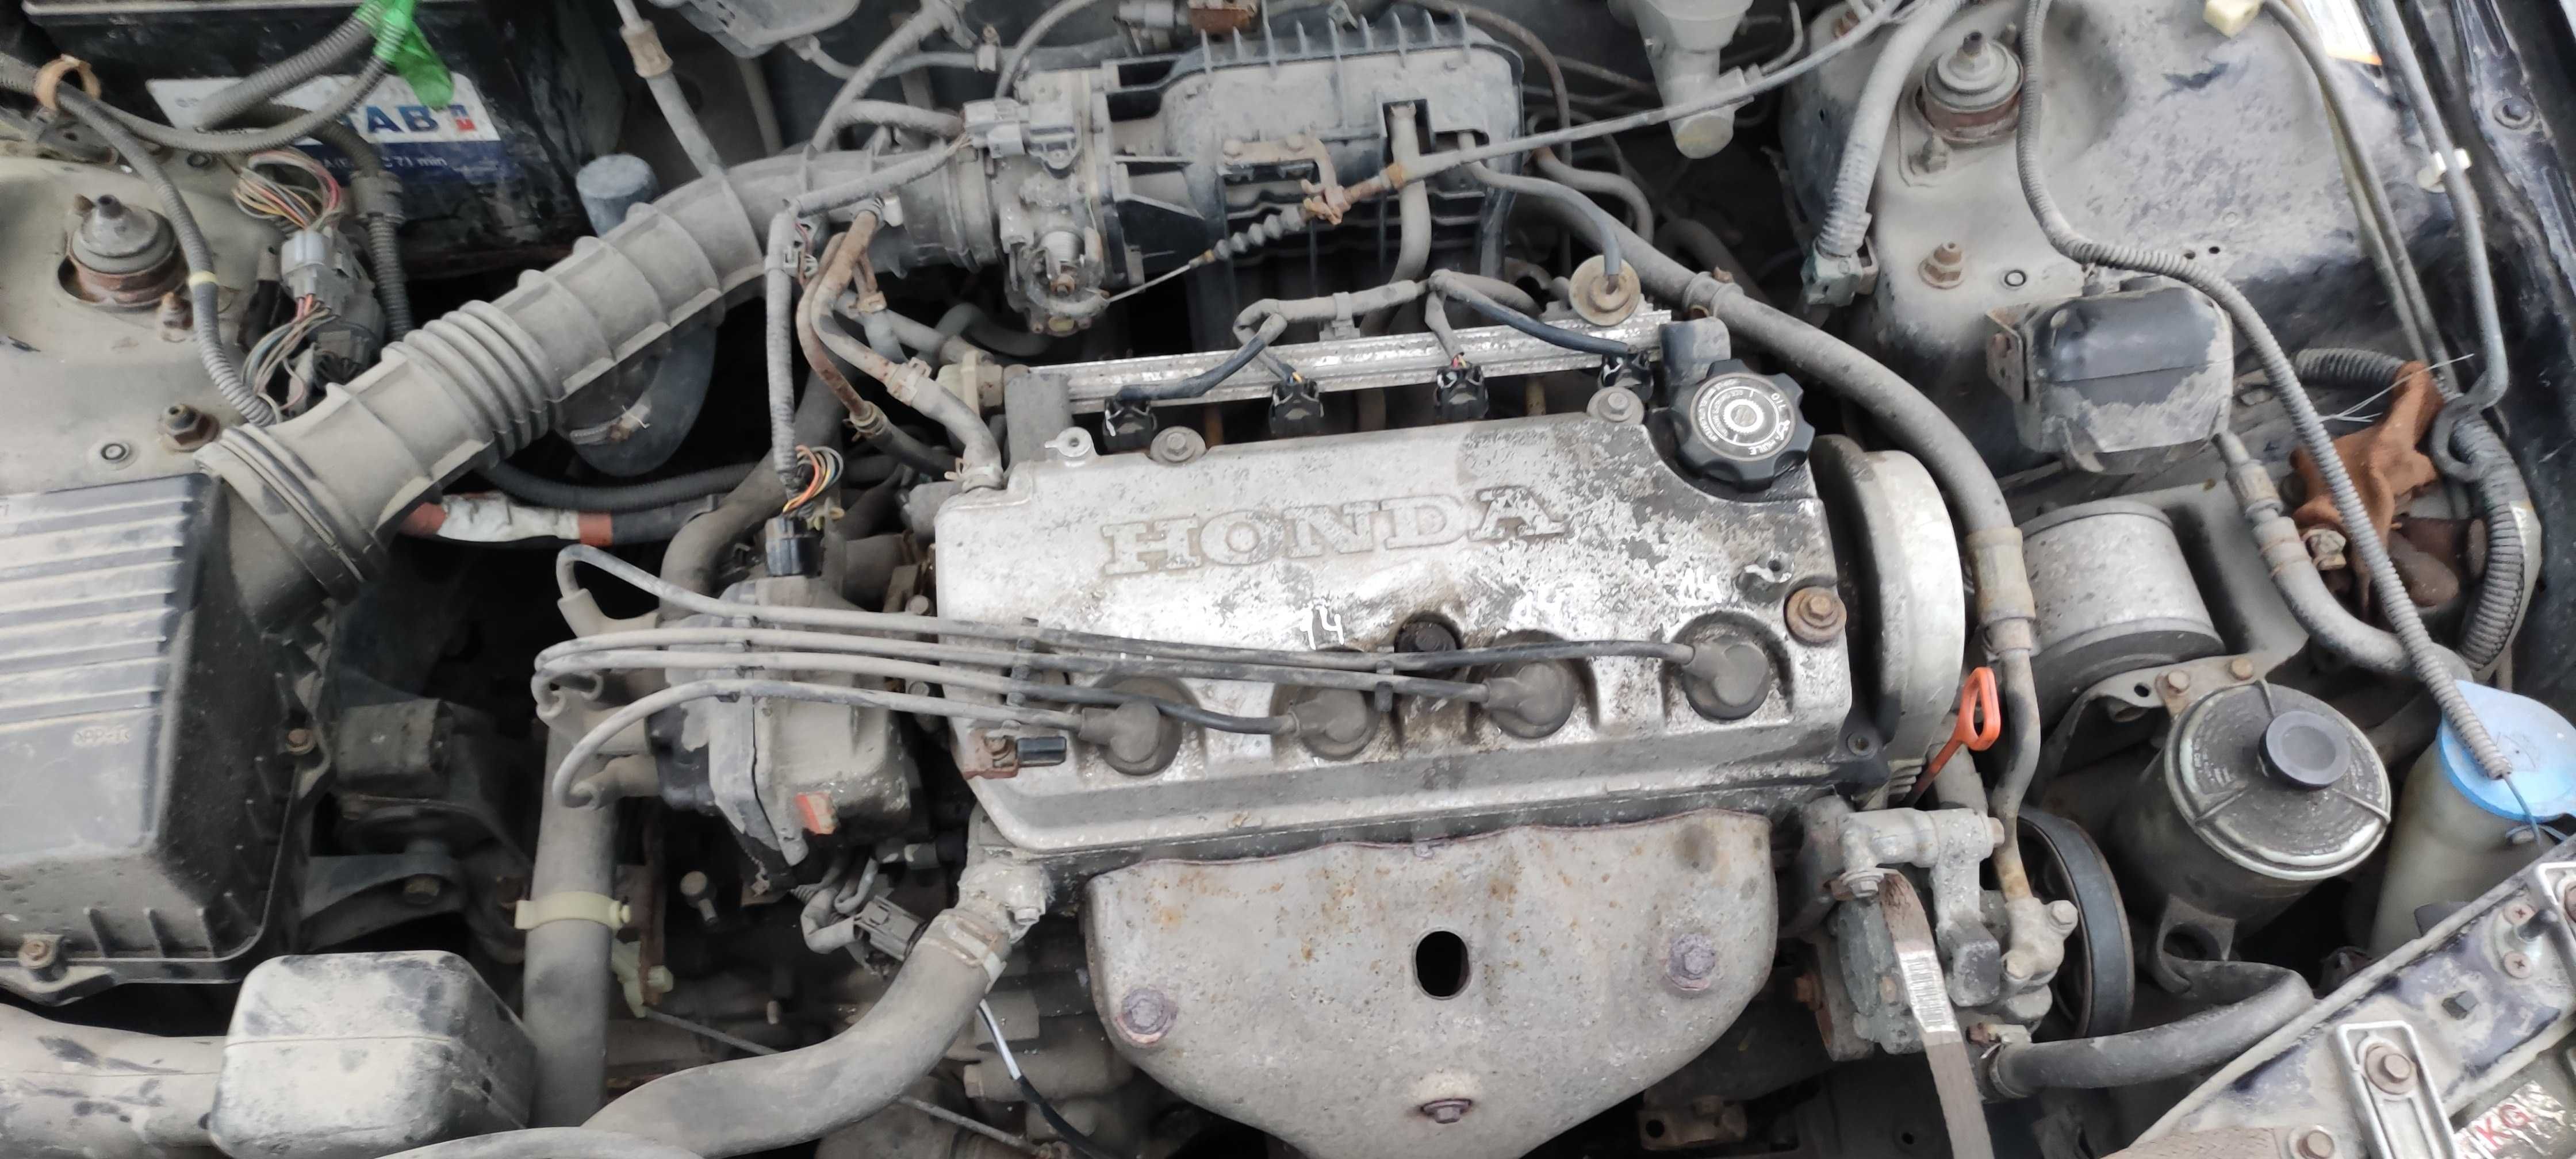 Двигатель 1,4 запчасти Honda Civic 98 год.